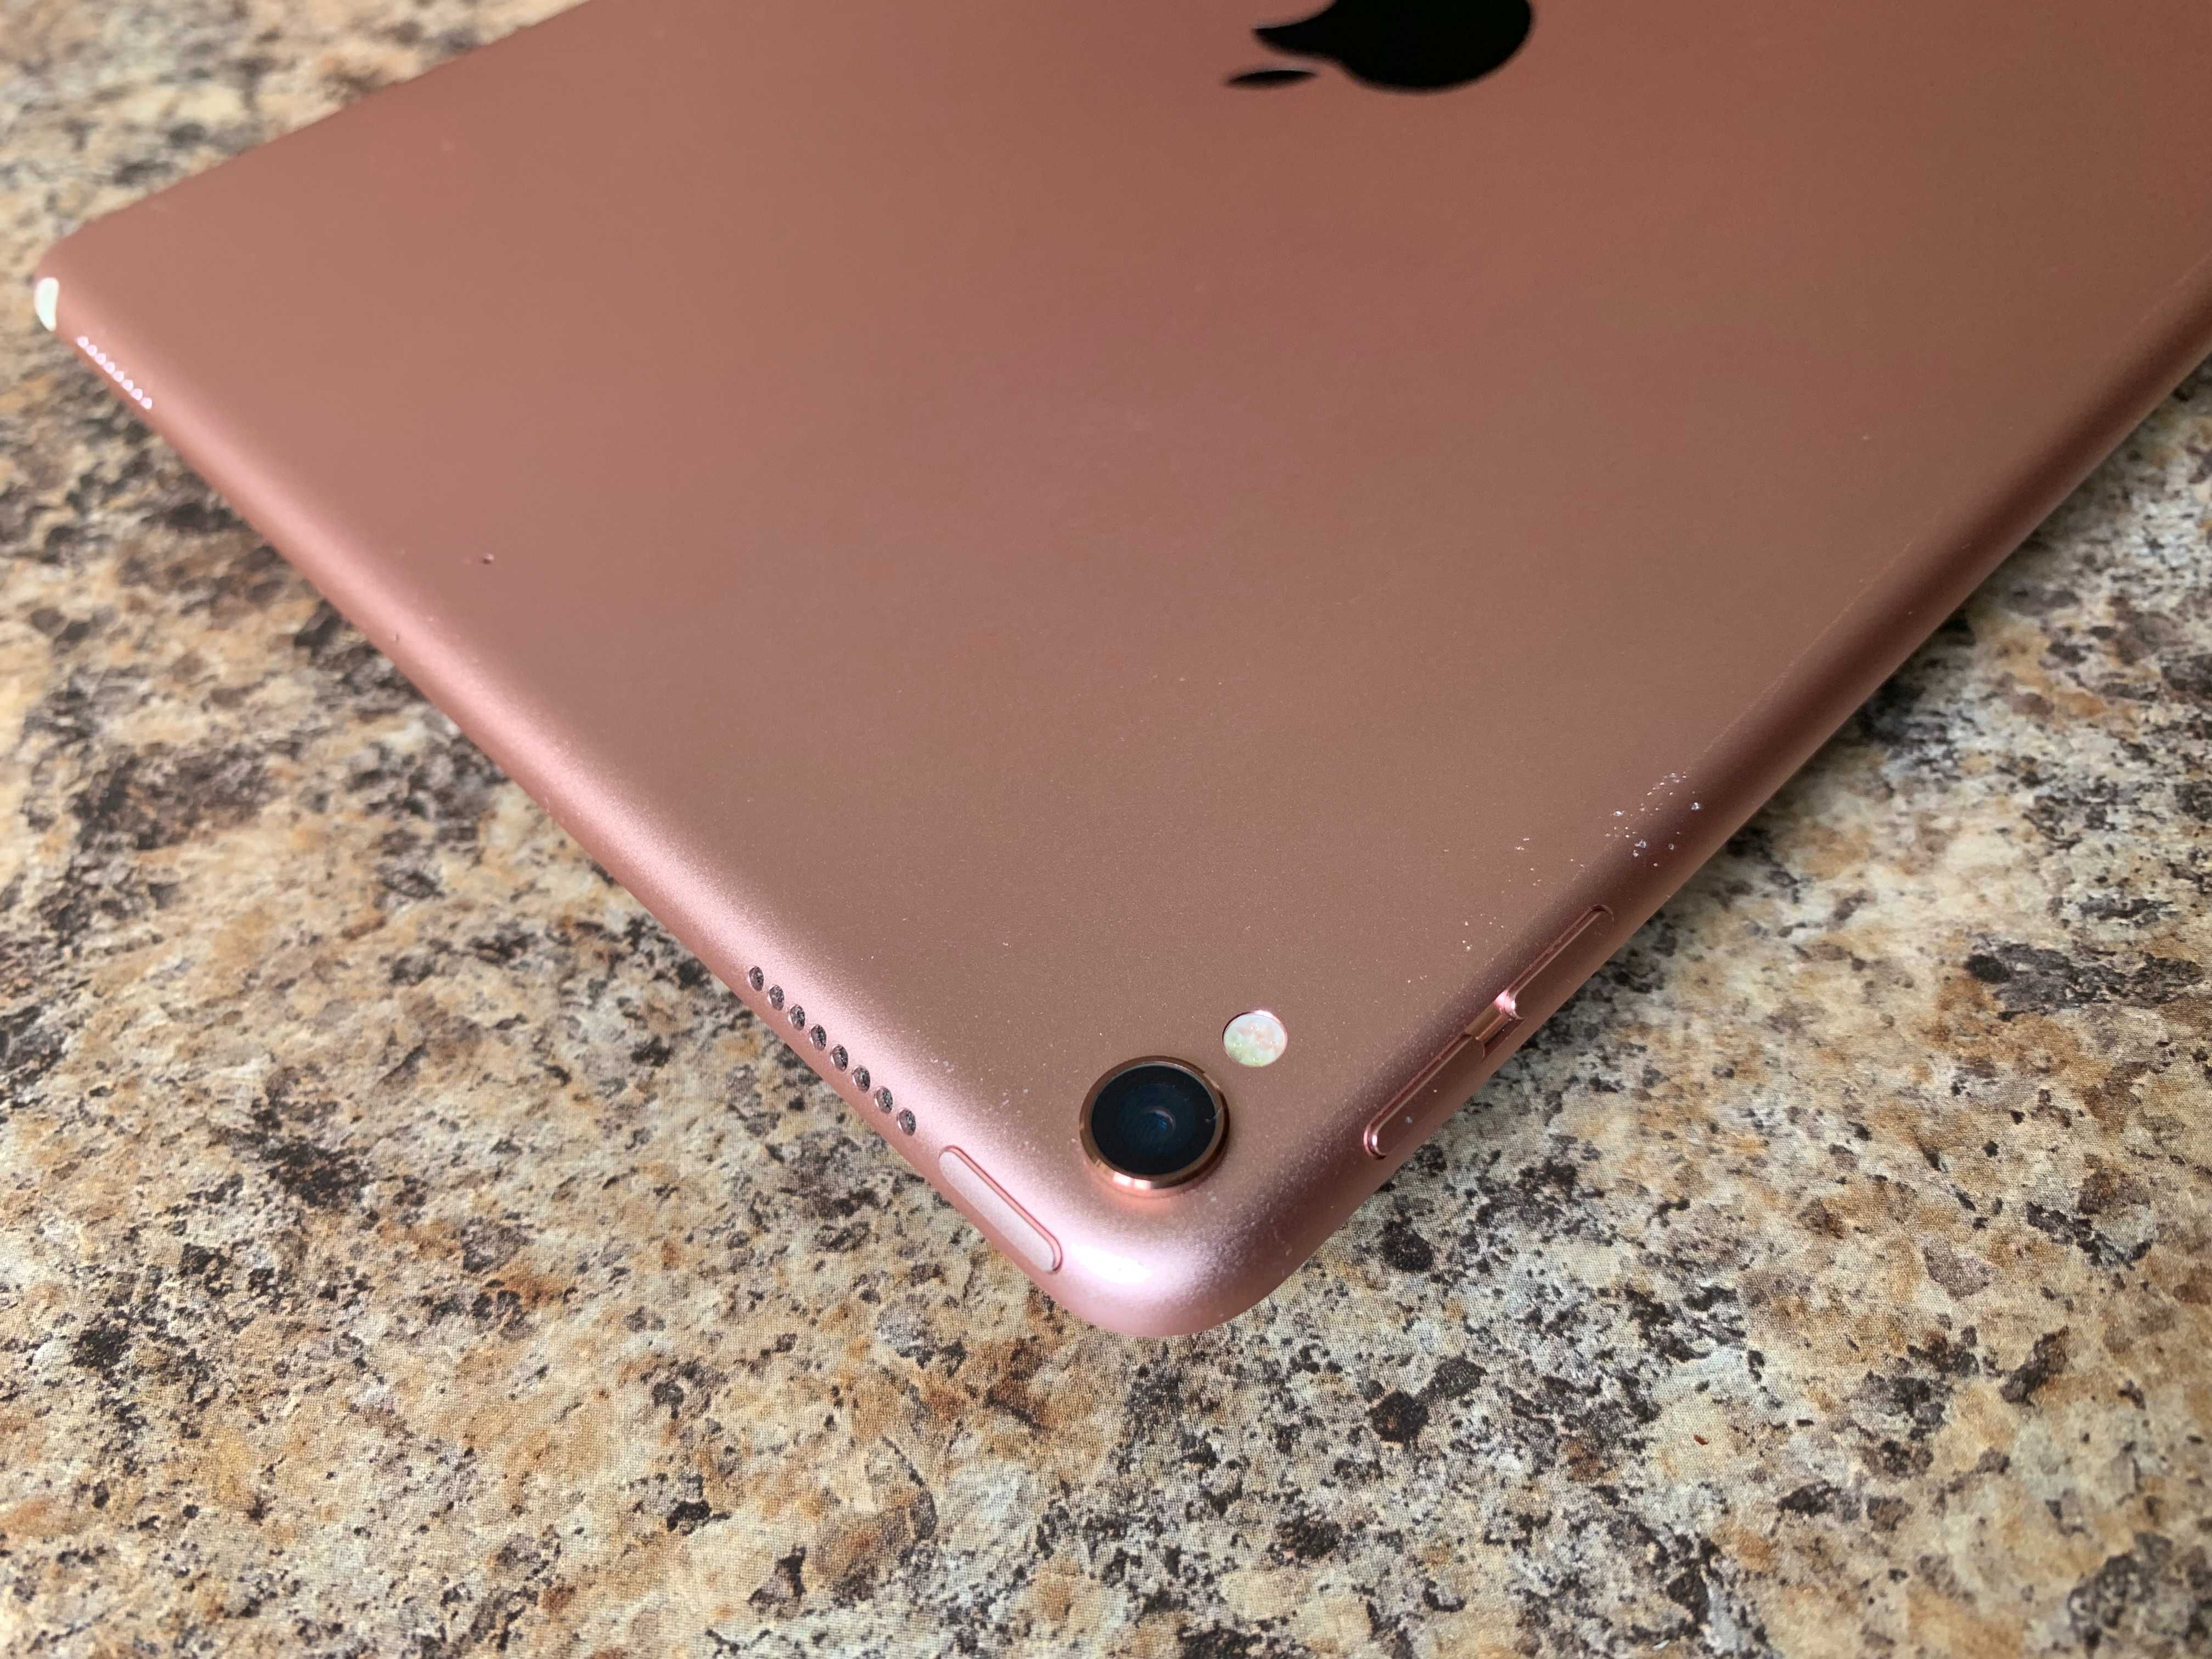 Apple iPad Pro 10.5 1st Gen 64GB Pink